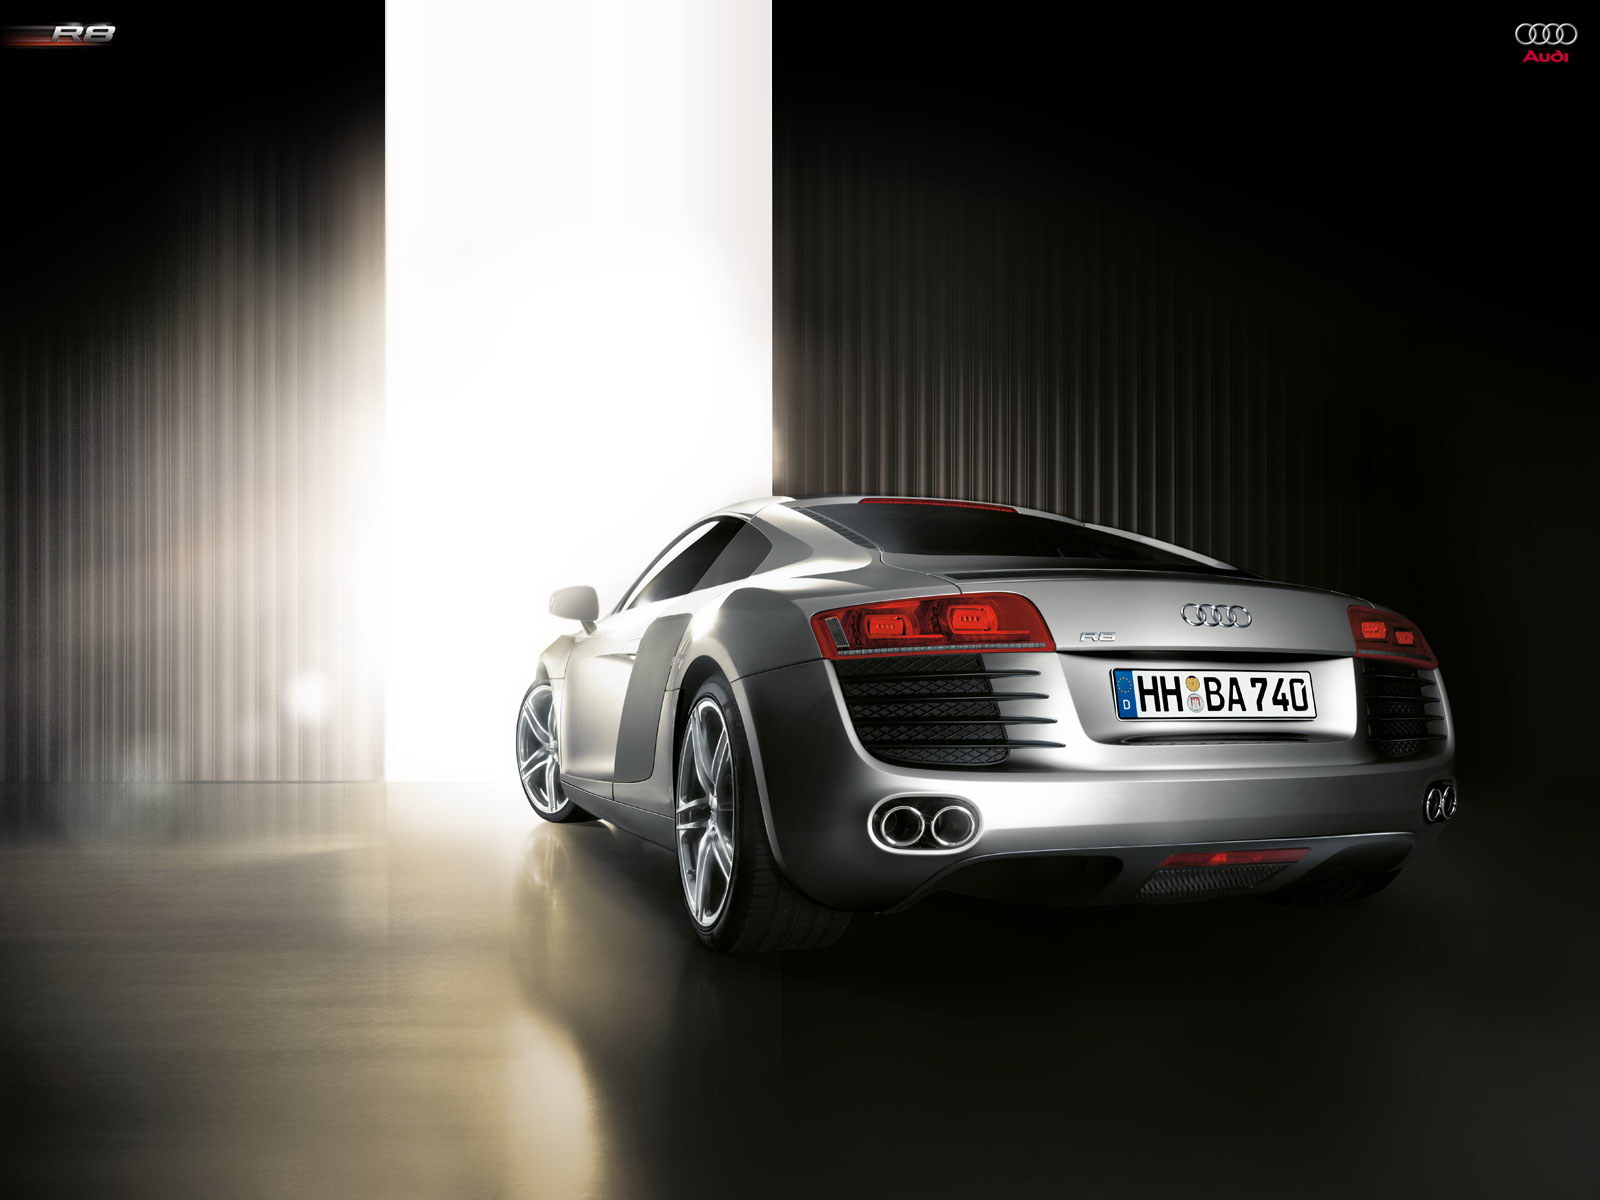 Fond d'ecran Audi R8 grise